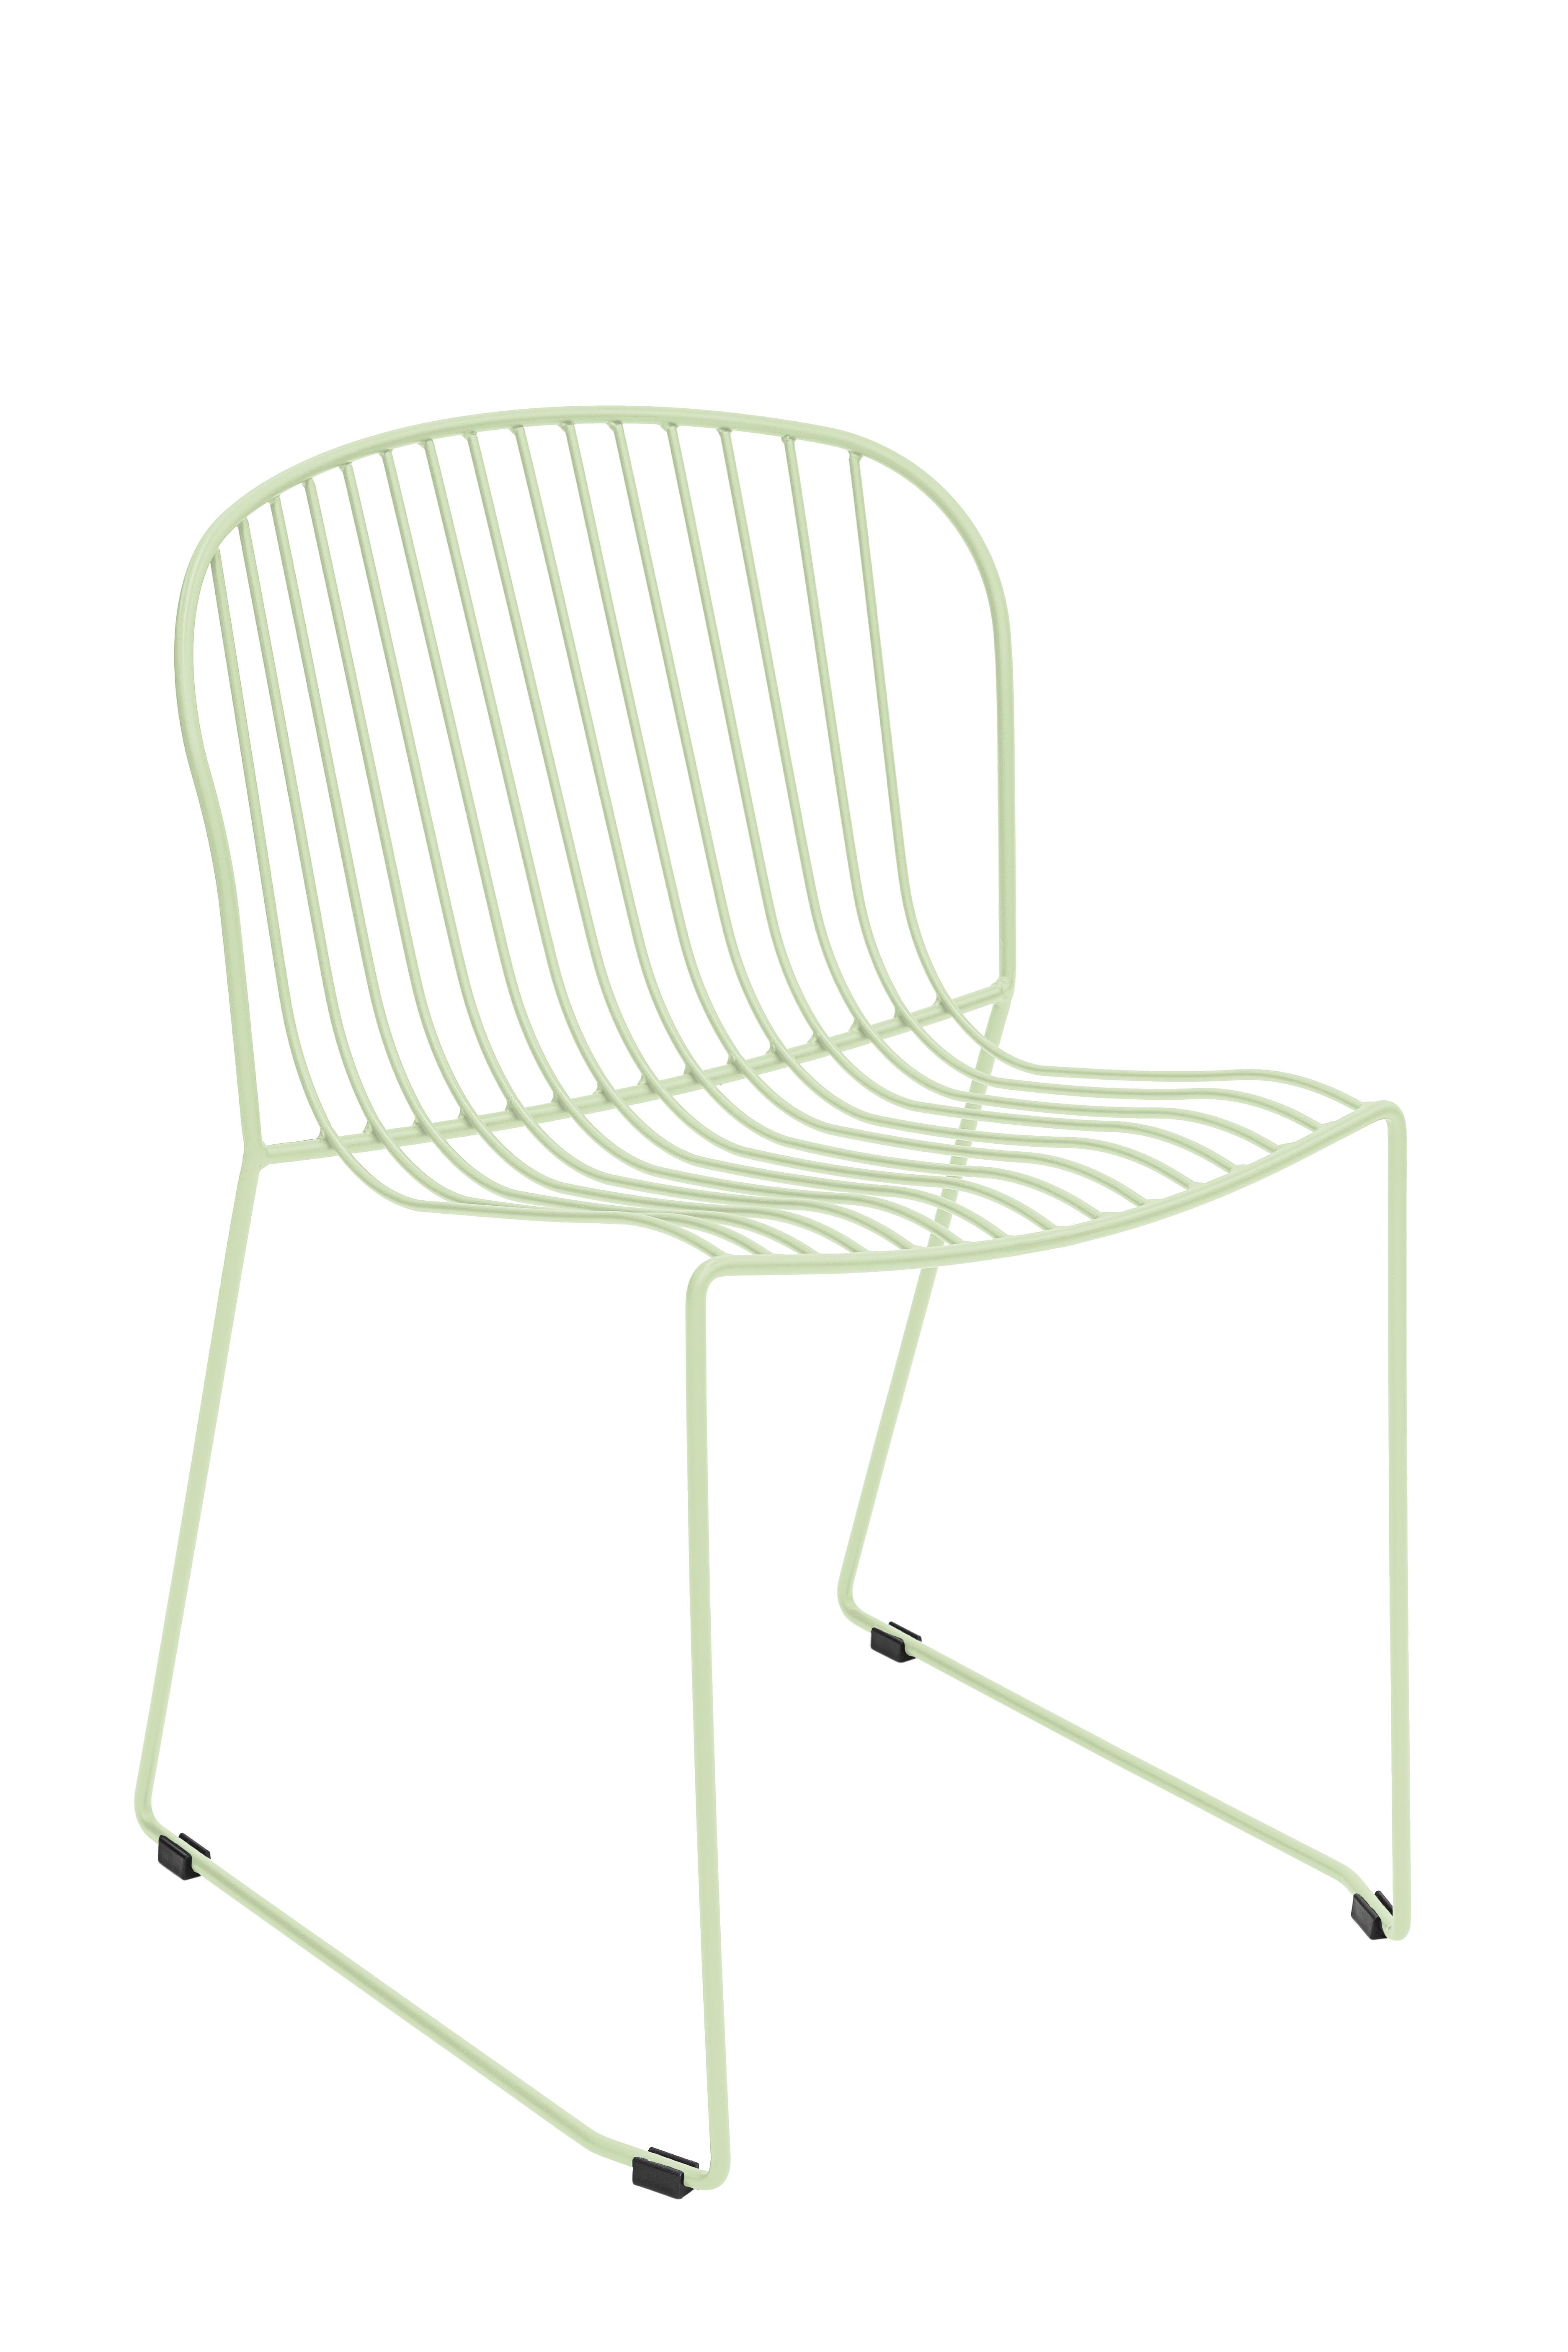 Chaise en acier vert